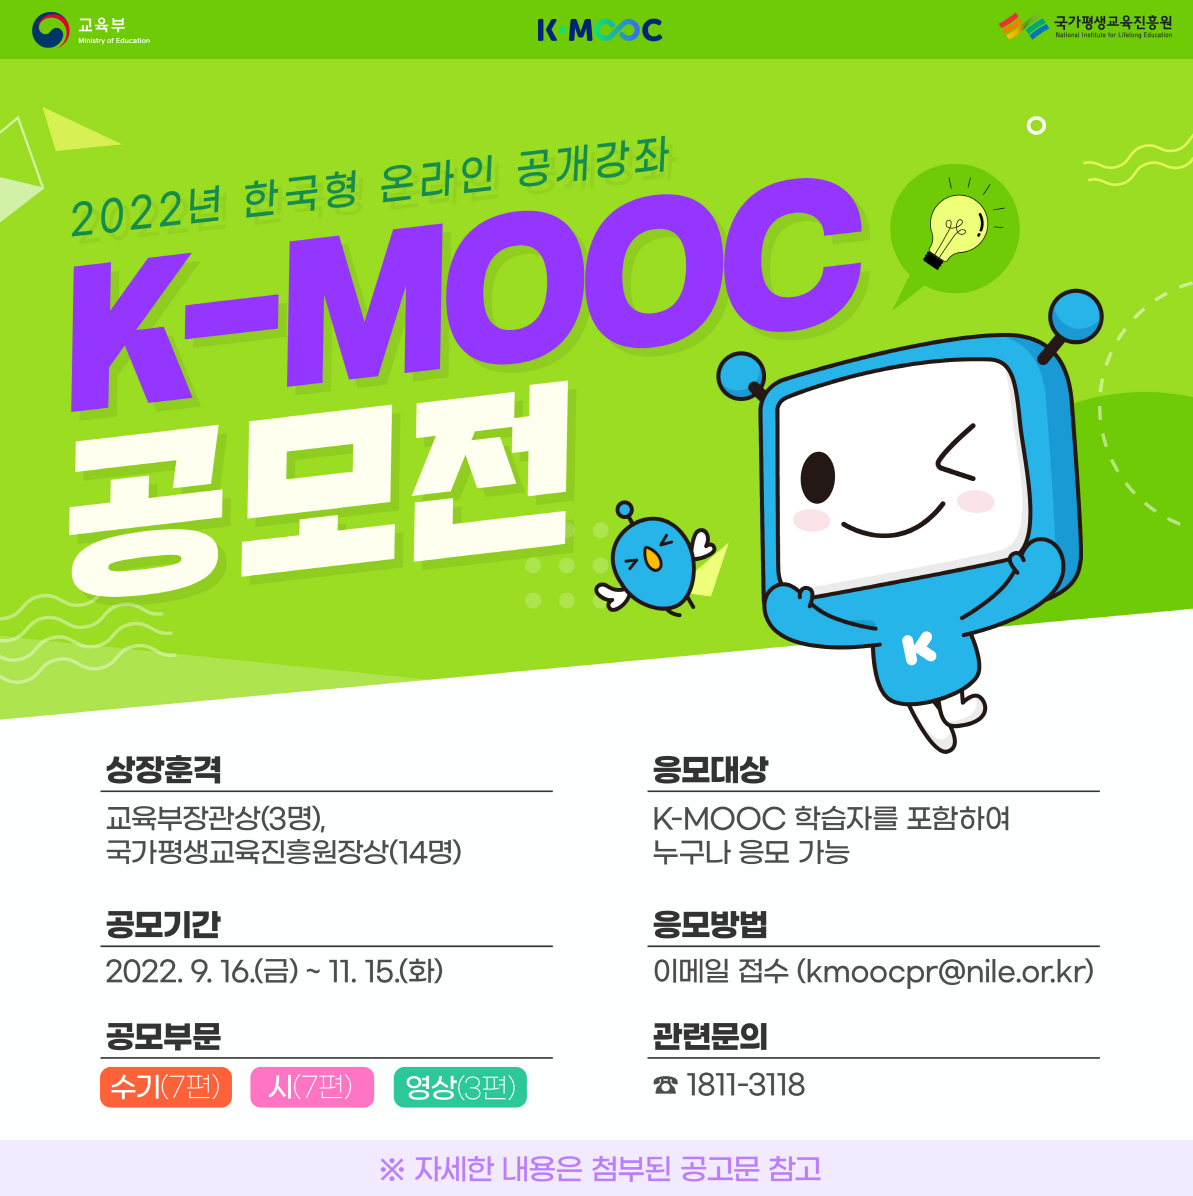 국가평생교육진흥원에서 진행하는 2022년 한국형 온라인 공개강좌(K-MOOC) 공모전 기한을 연장합니다. 공모기간은 2022년 11월 15일(화) 18시까지 입니다. 